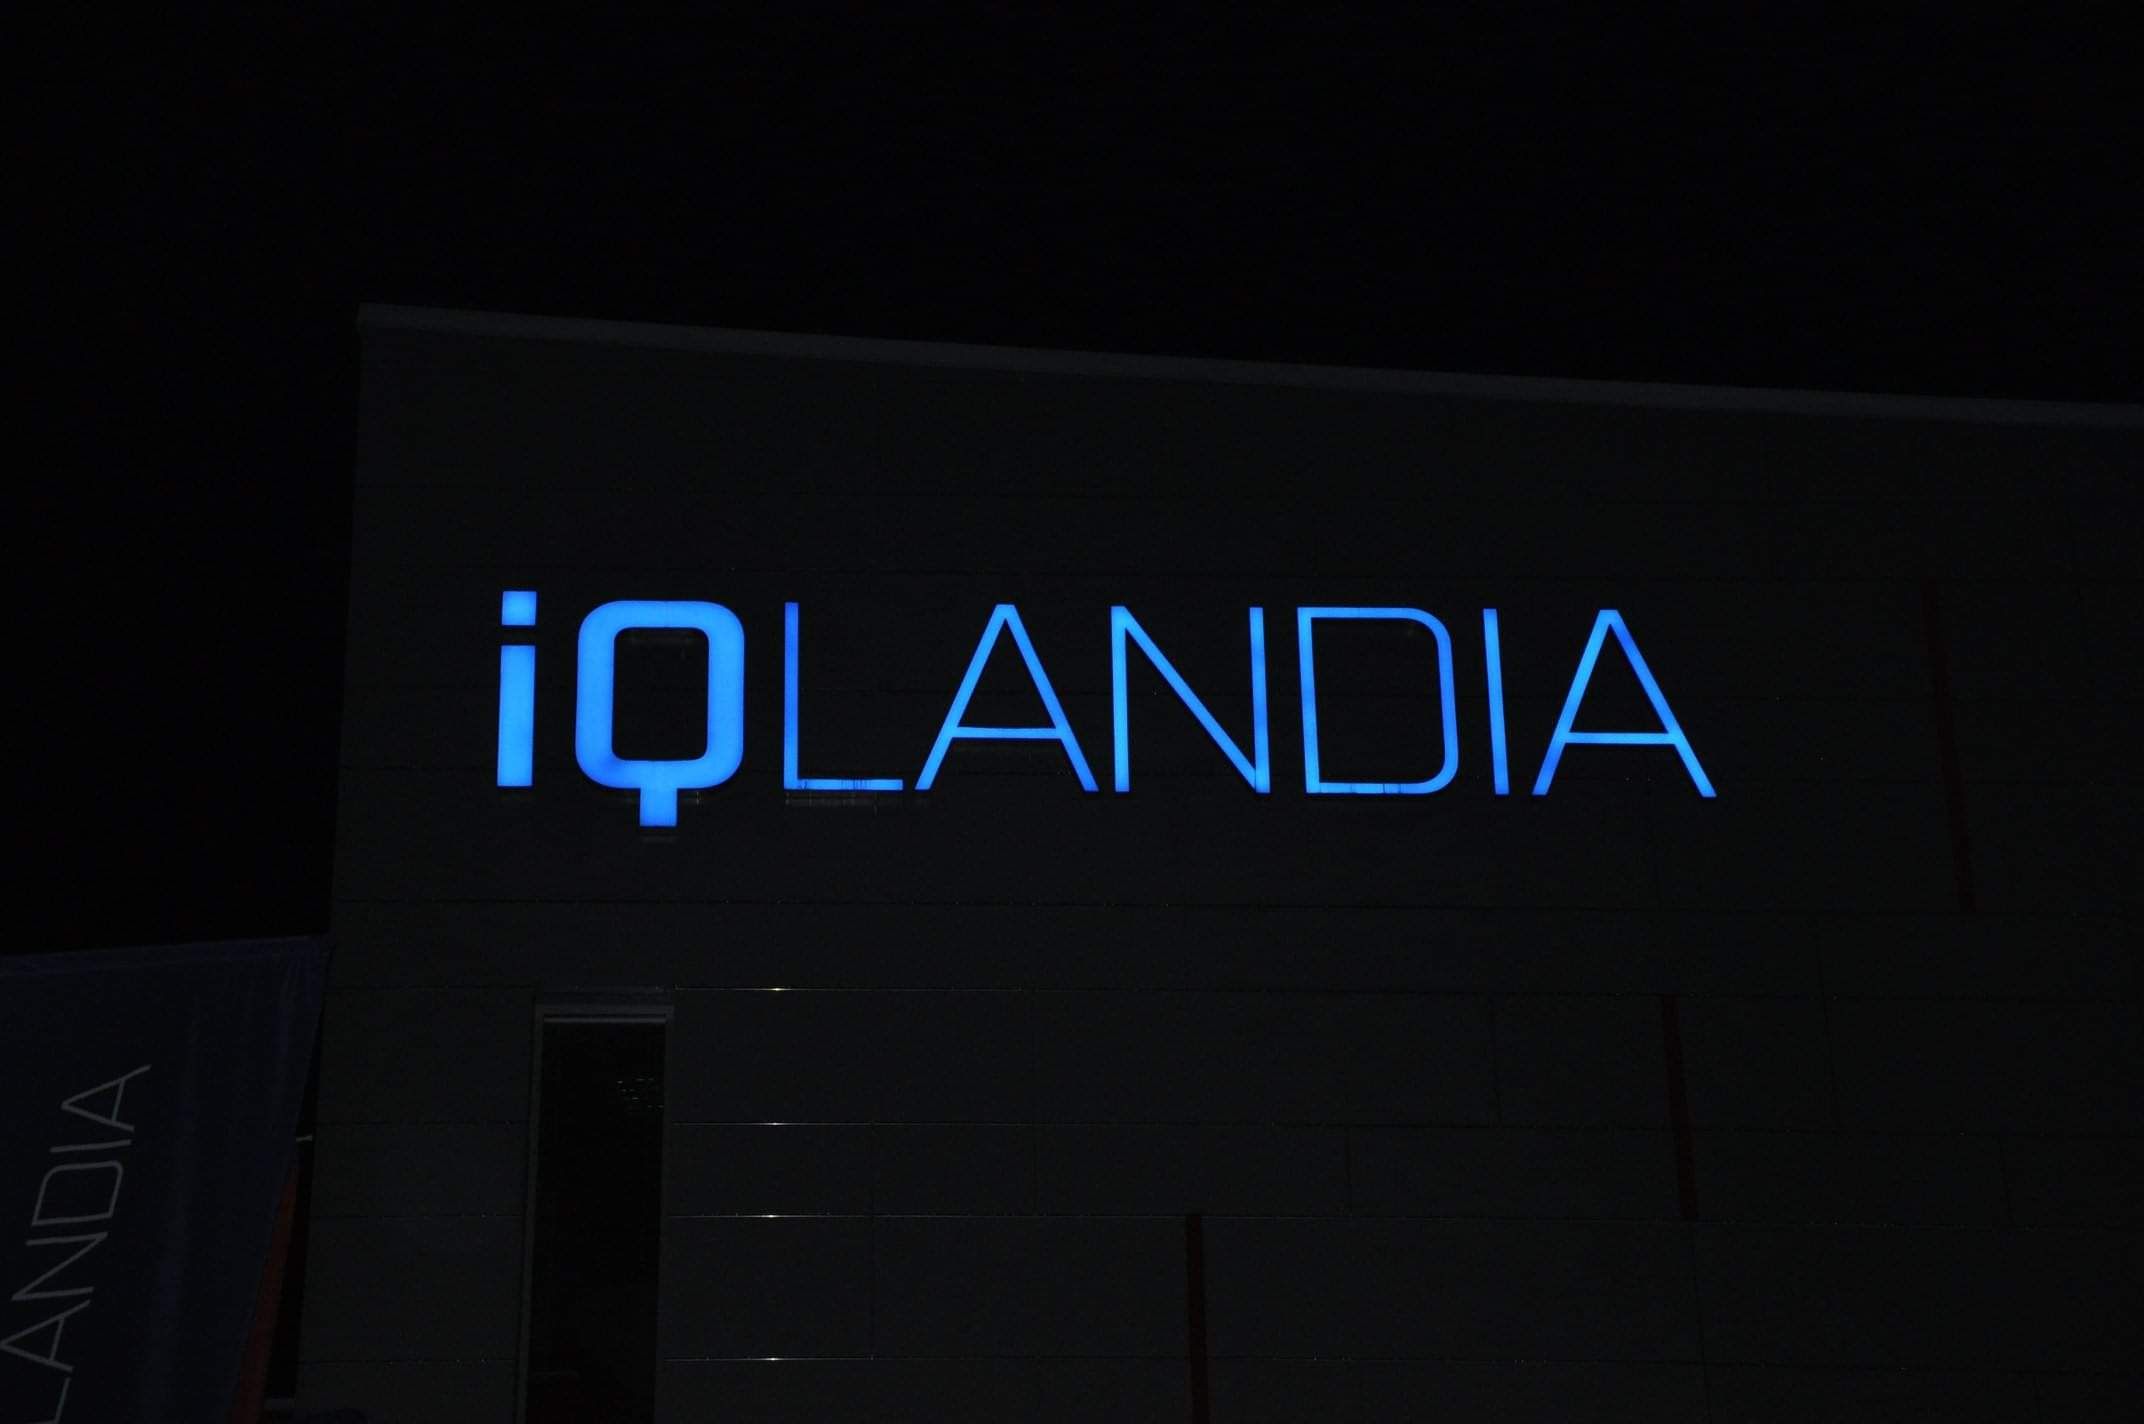 IQ Landia